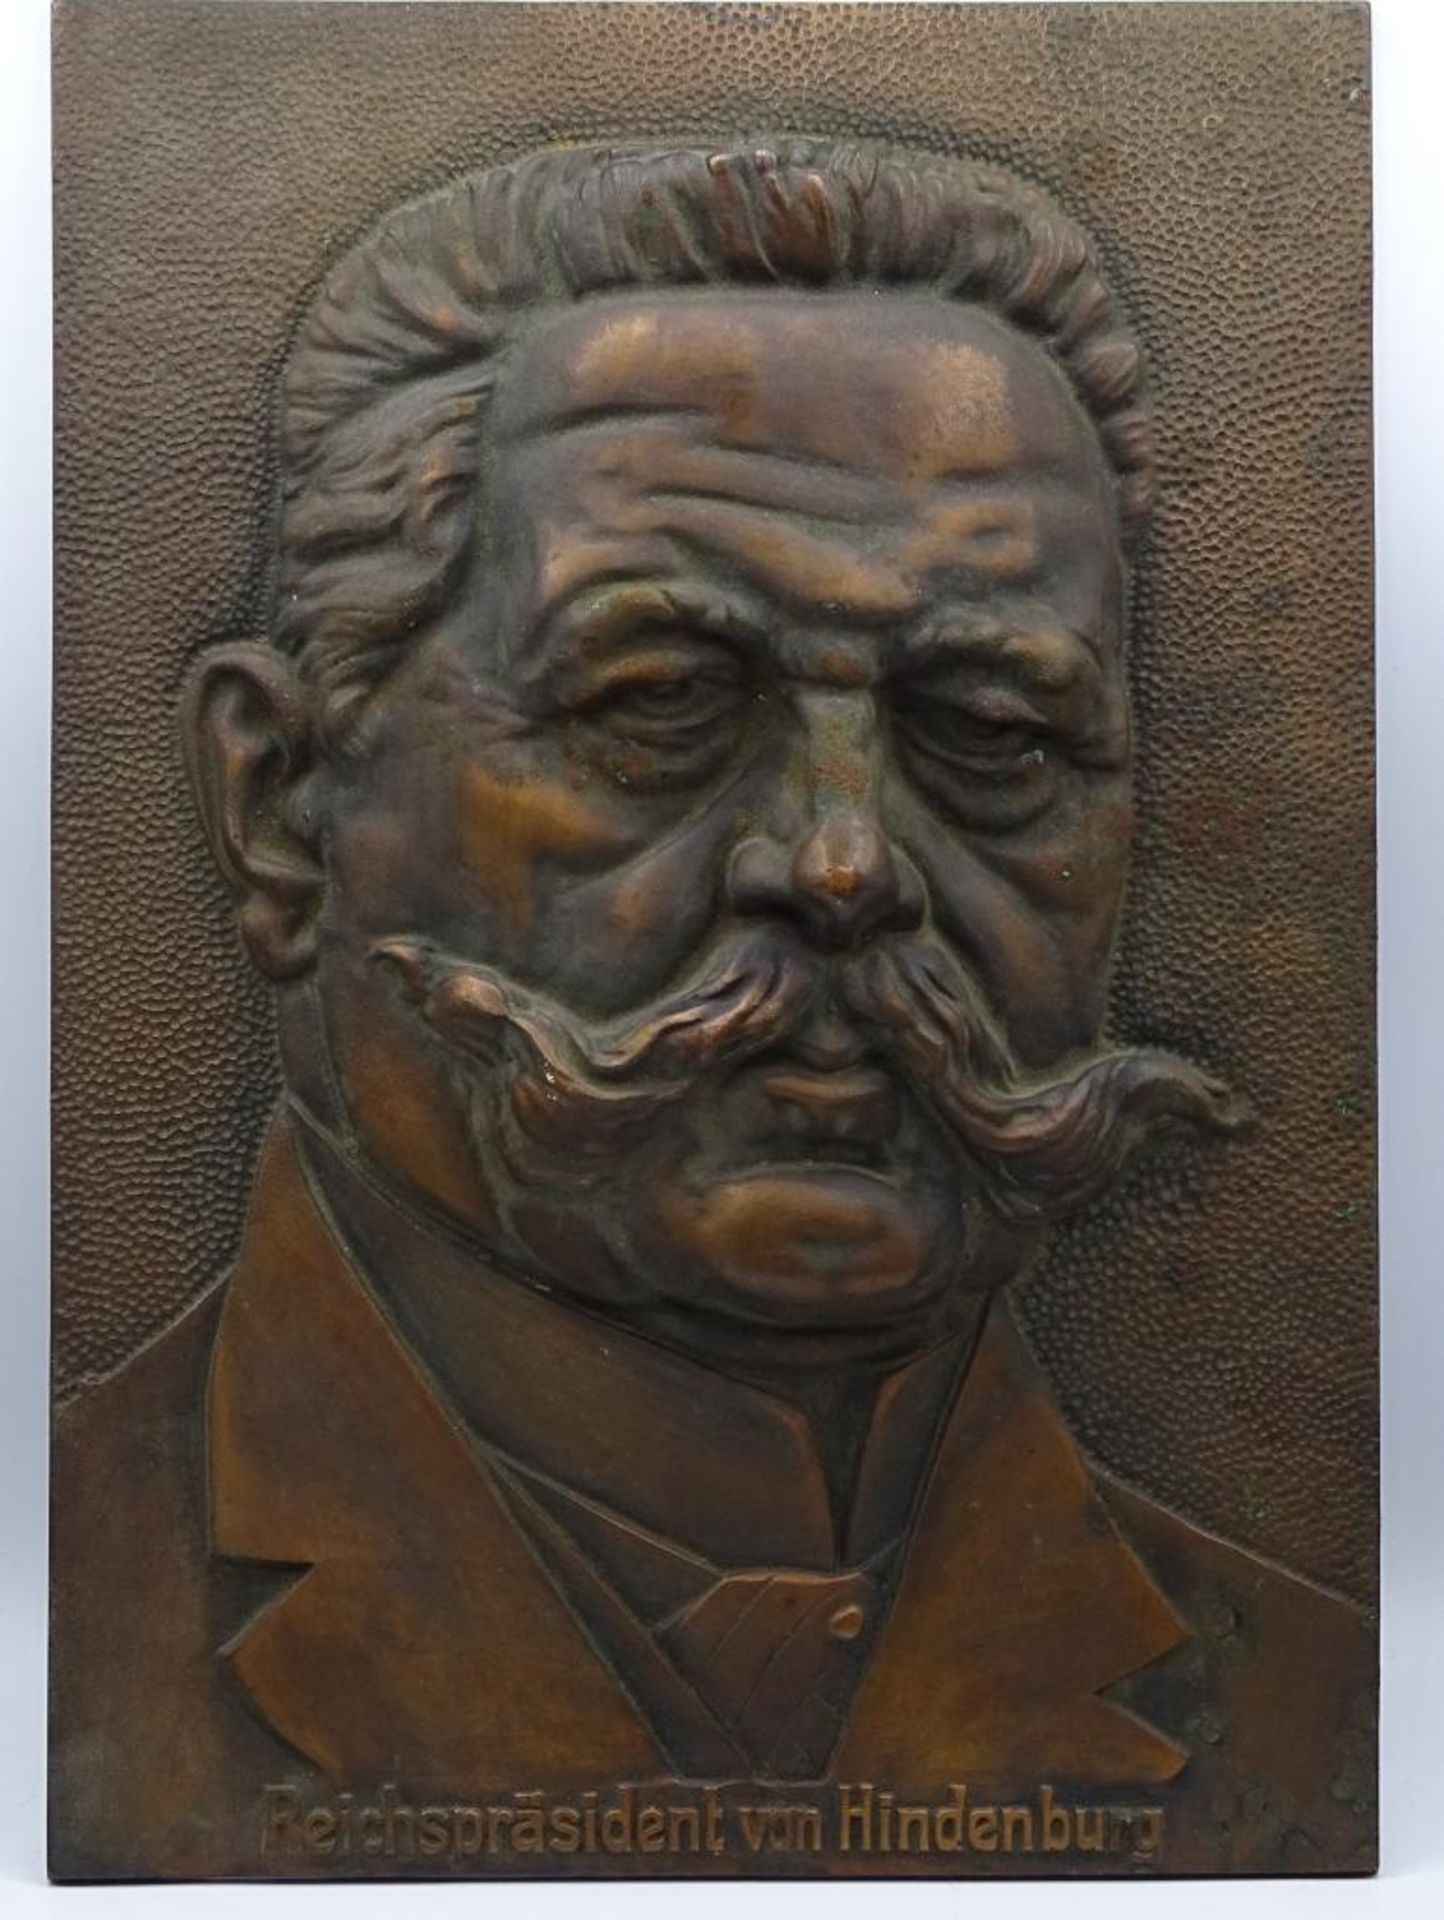 Große schwere Plakette "Reichspräsident von Hindenburg", 39x27